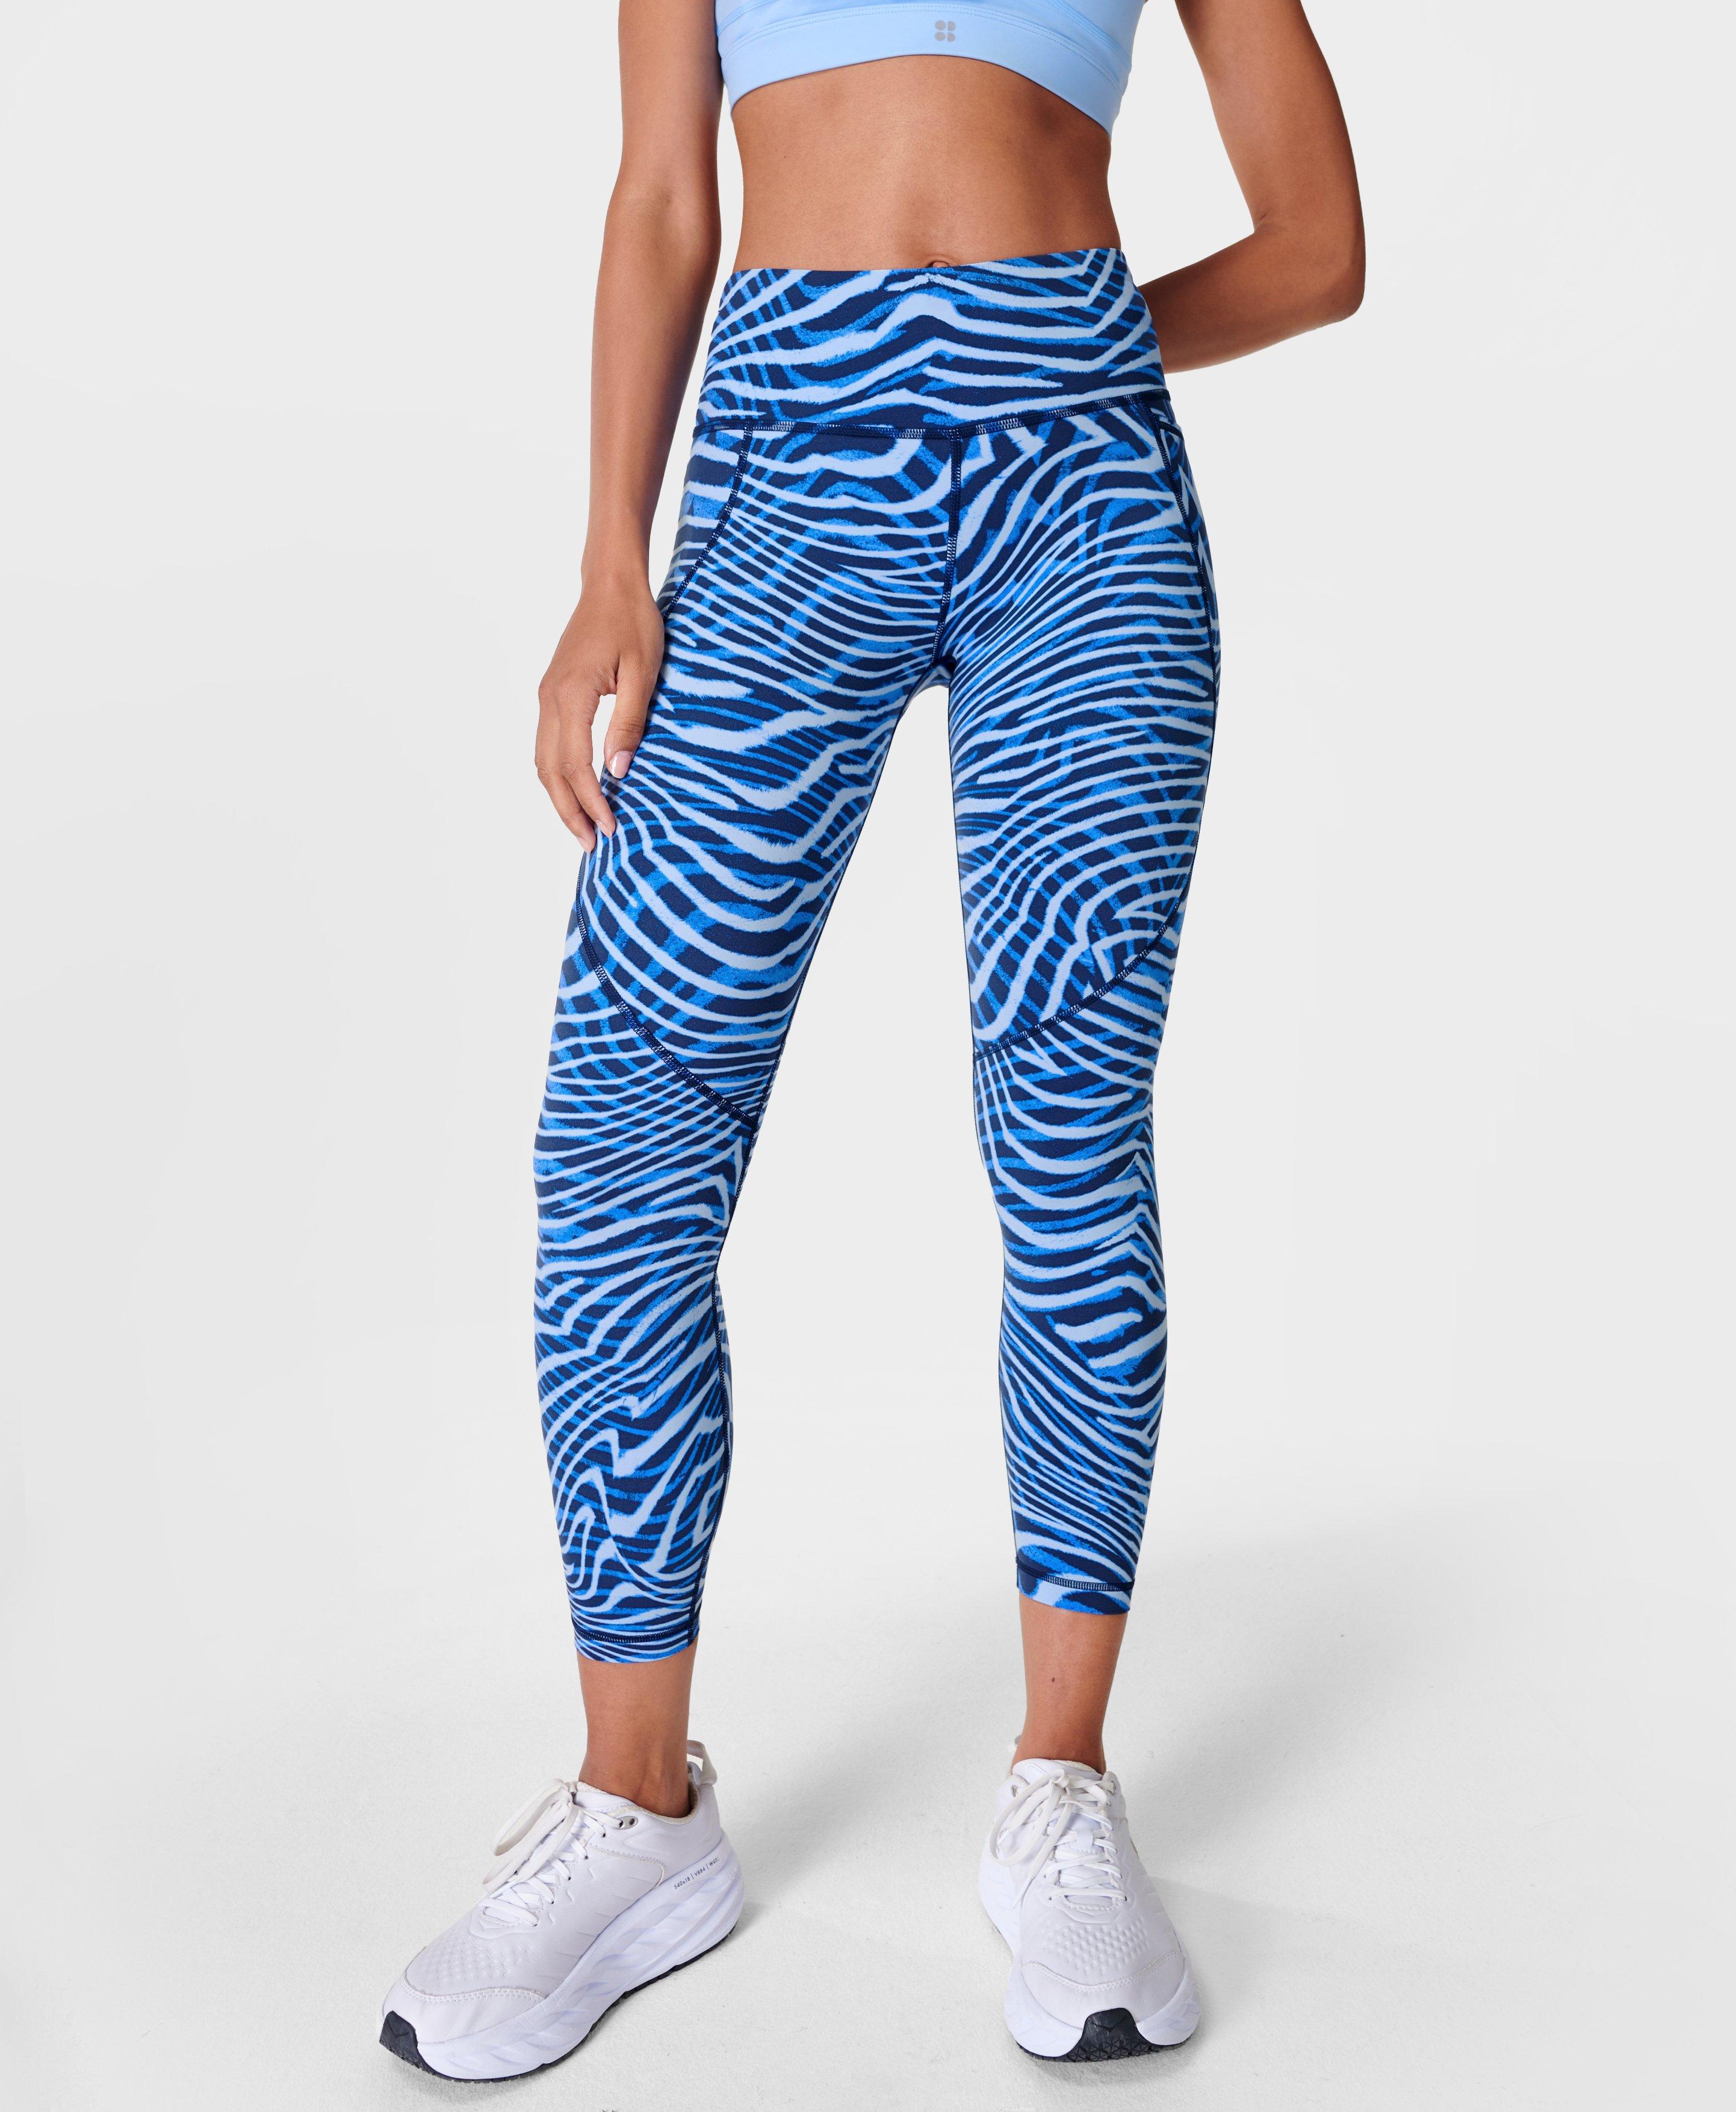 zebra print lululemon leggings